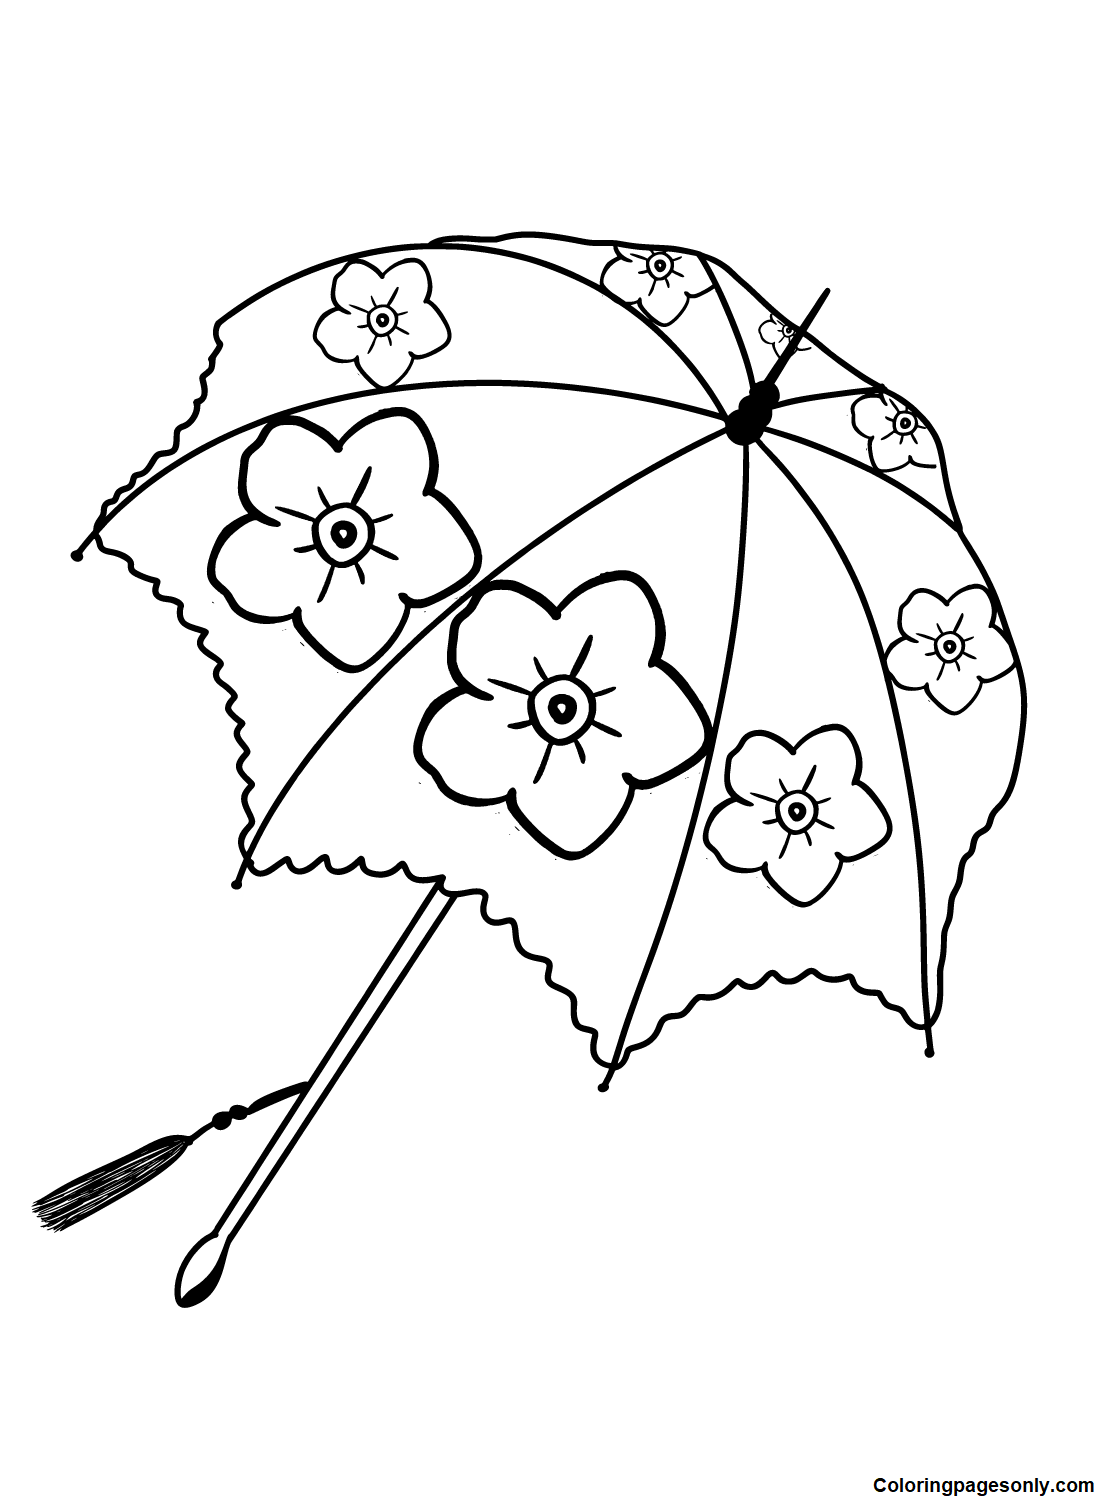 Guarda-chuva grátis da Umbrella